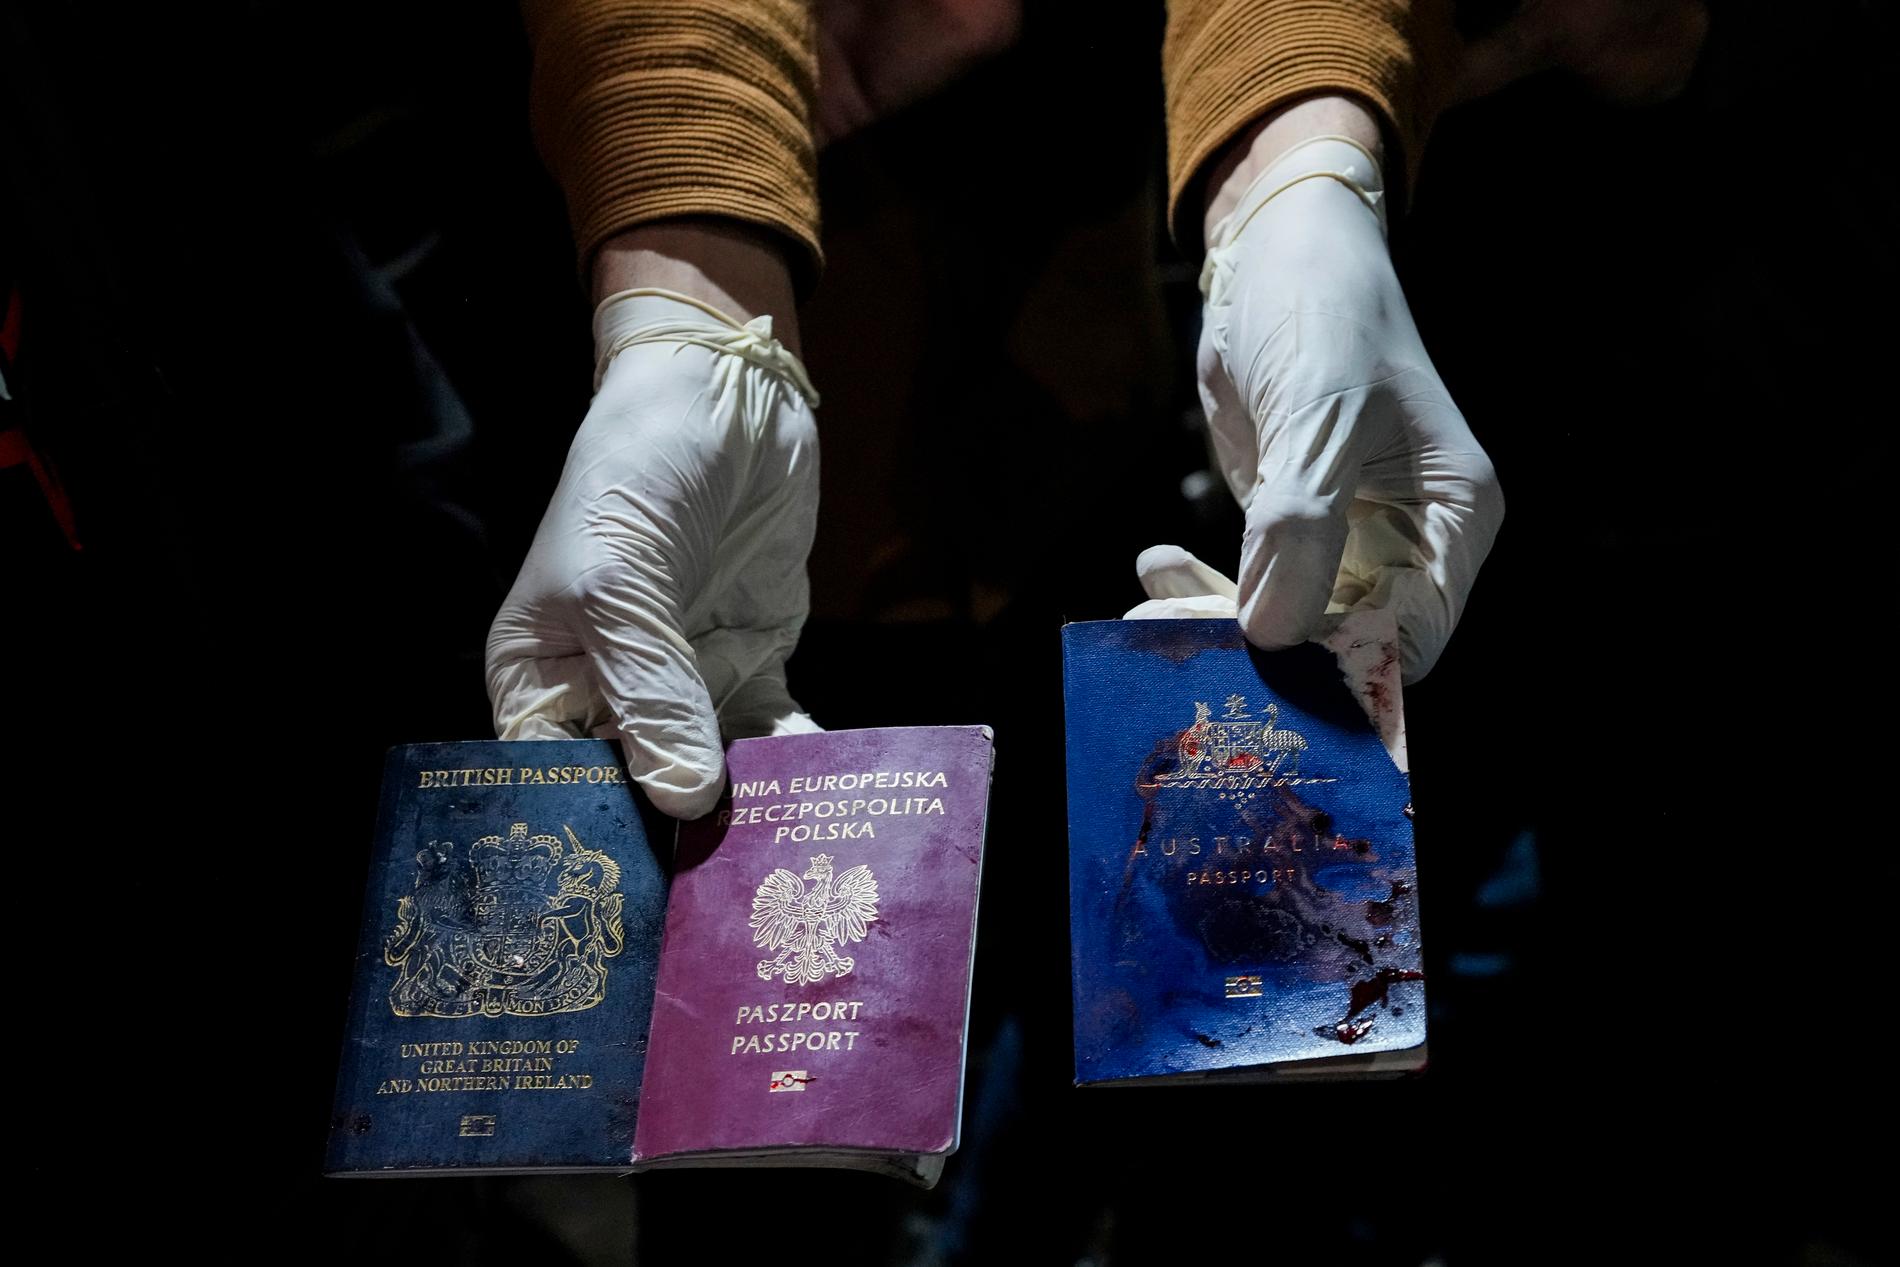 Ett brittiskt, polskt och australiskt pass hittades efter attacken.